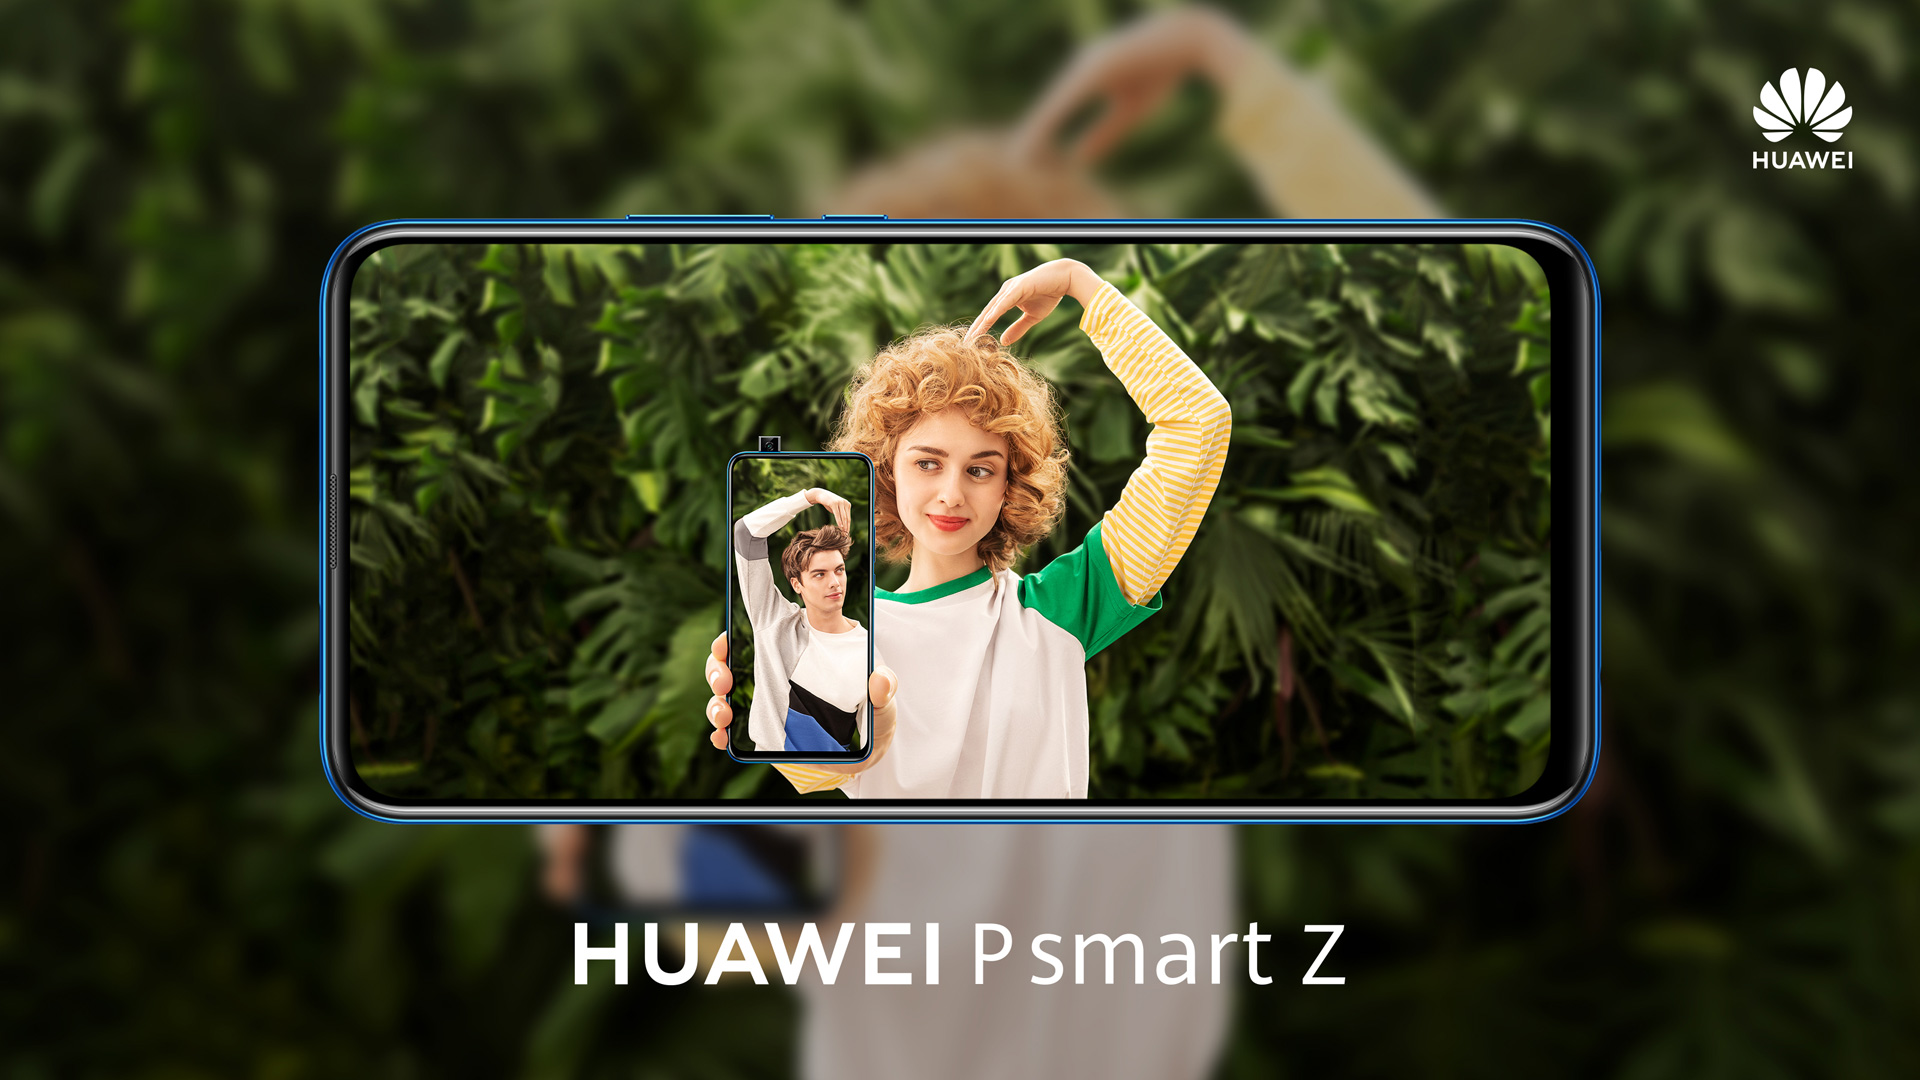 Huawei lansirao P smart Z telefon: Vrhunske performanse za prihvatljivu cijenu